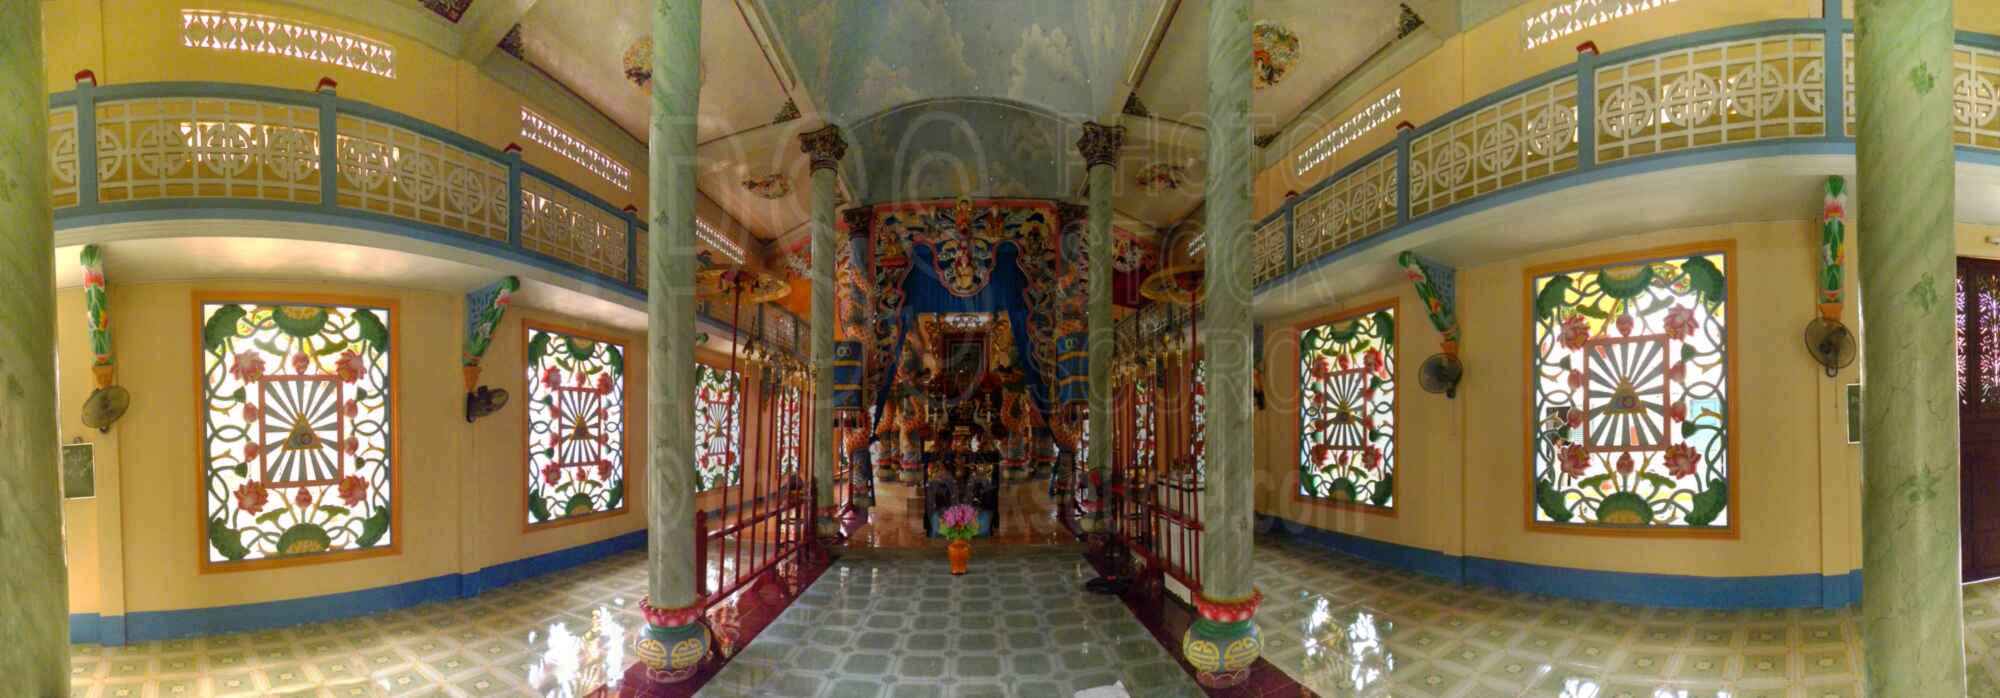 Cao Dai Temple Interior